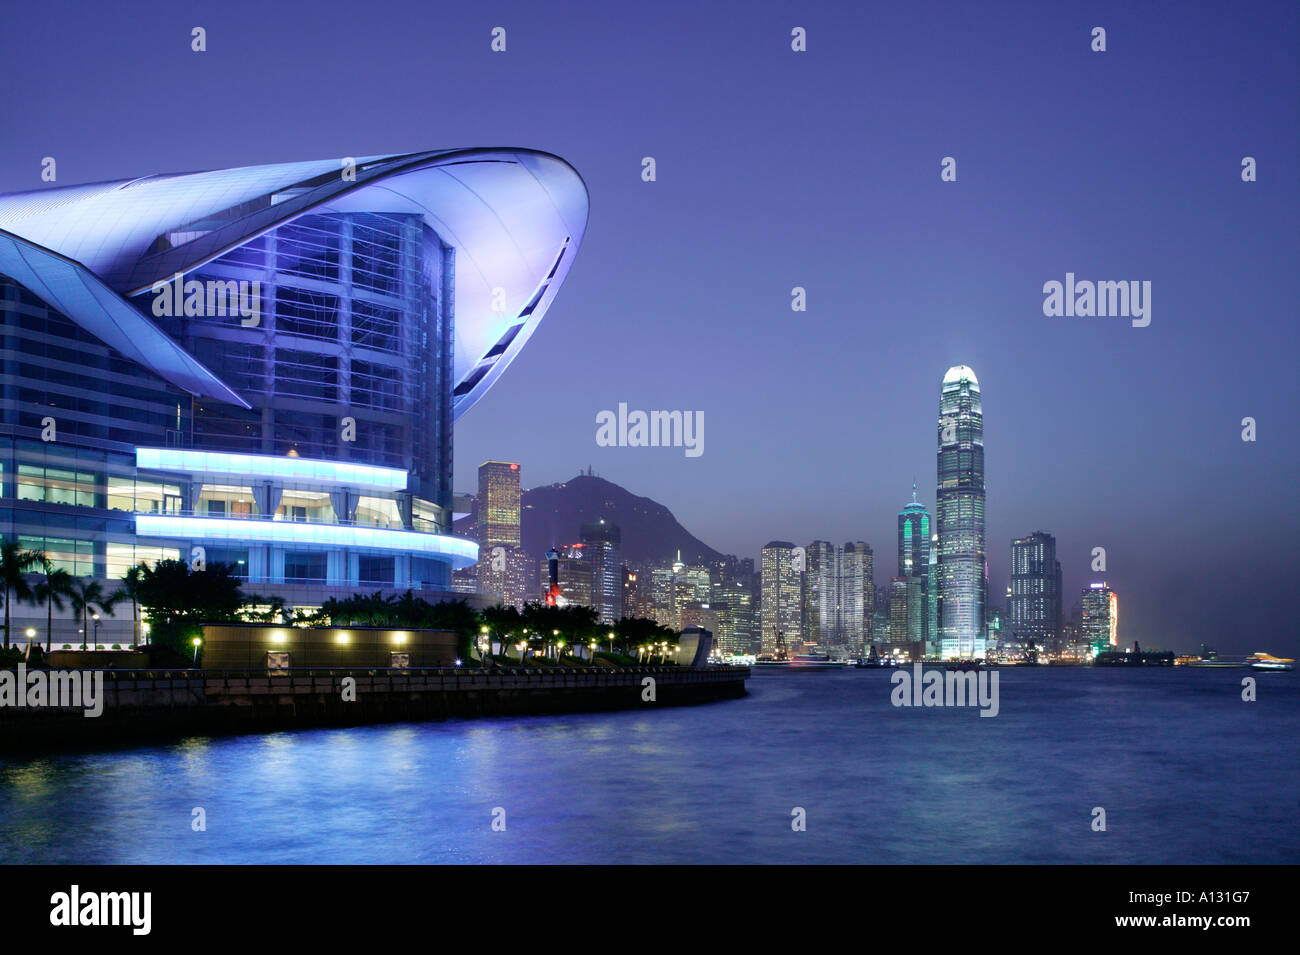 Hong Kong Convention und Exhibition Center Ifc-Gebäude und Finanzviertel im Hintergrund. Stockfoto